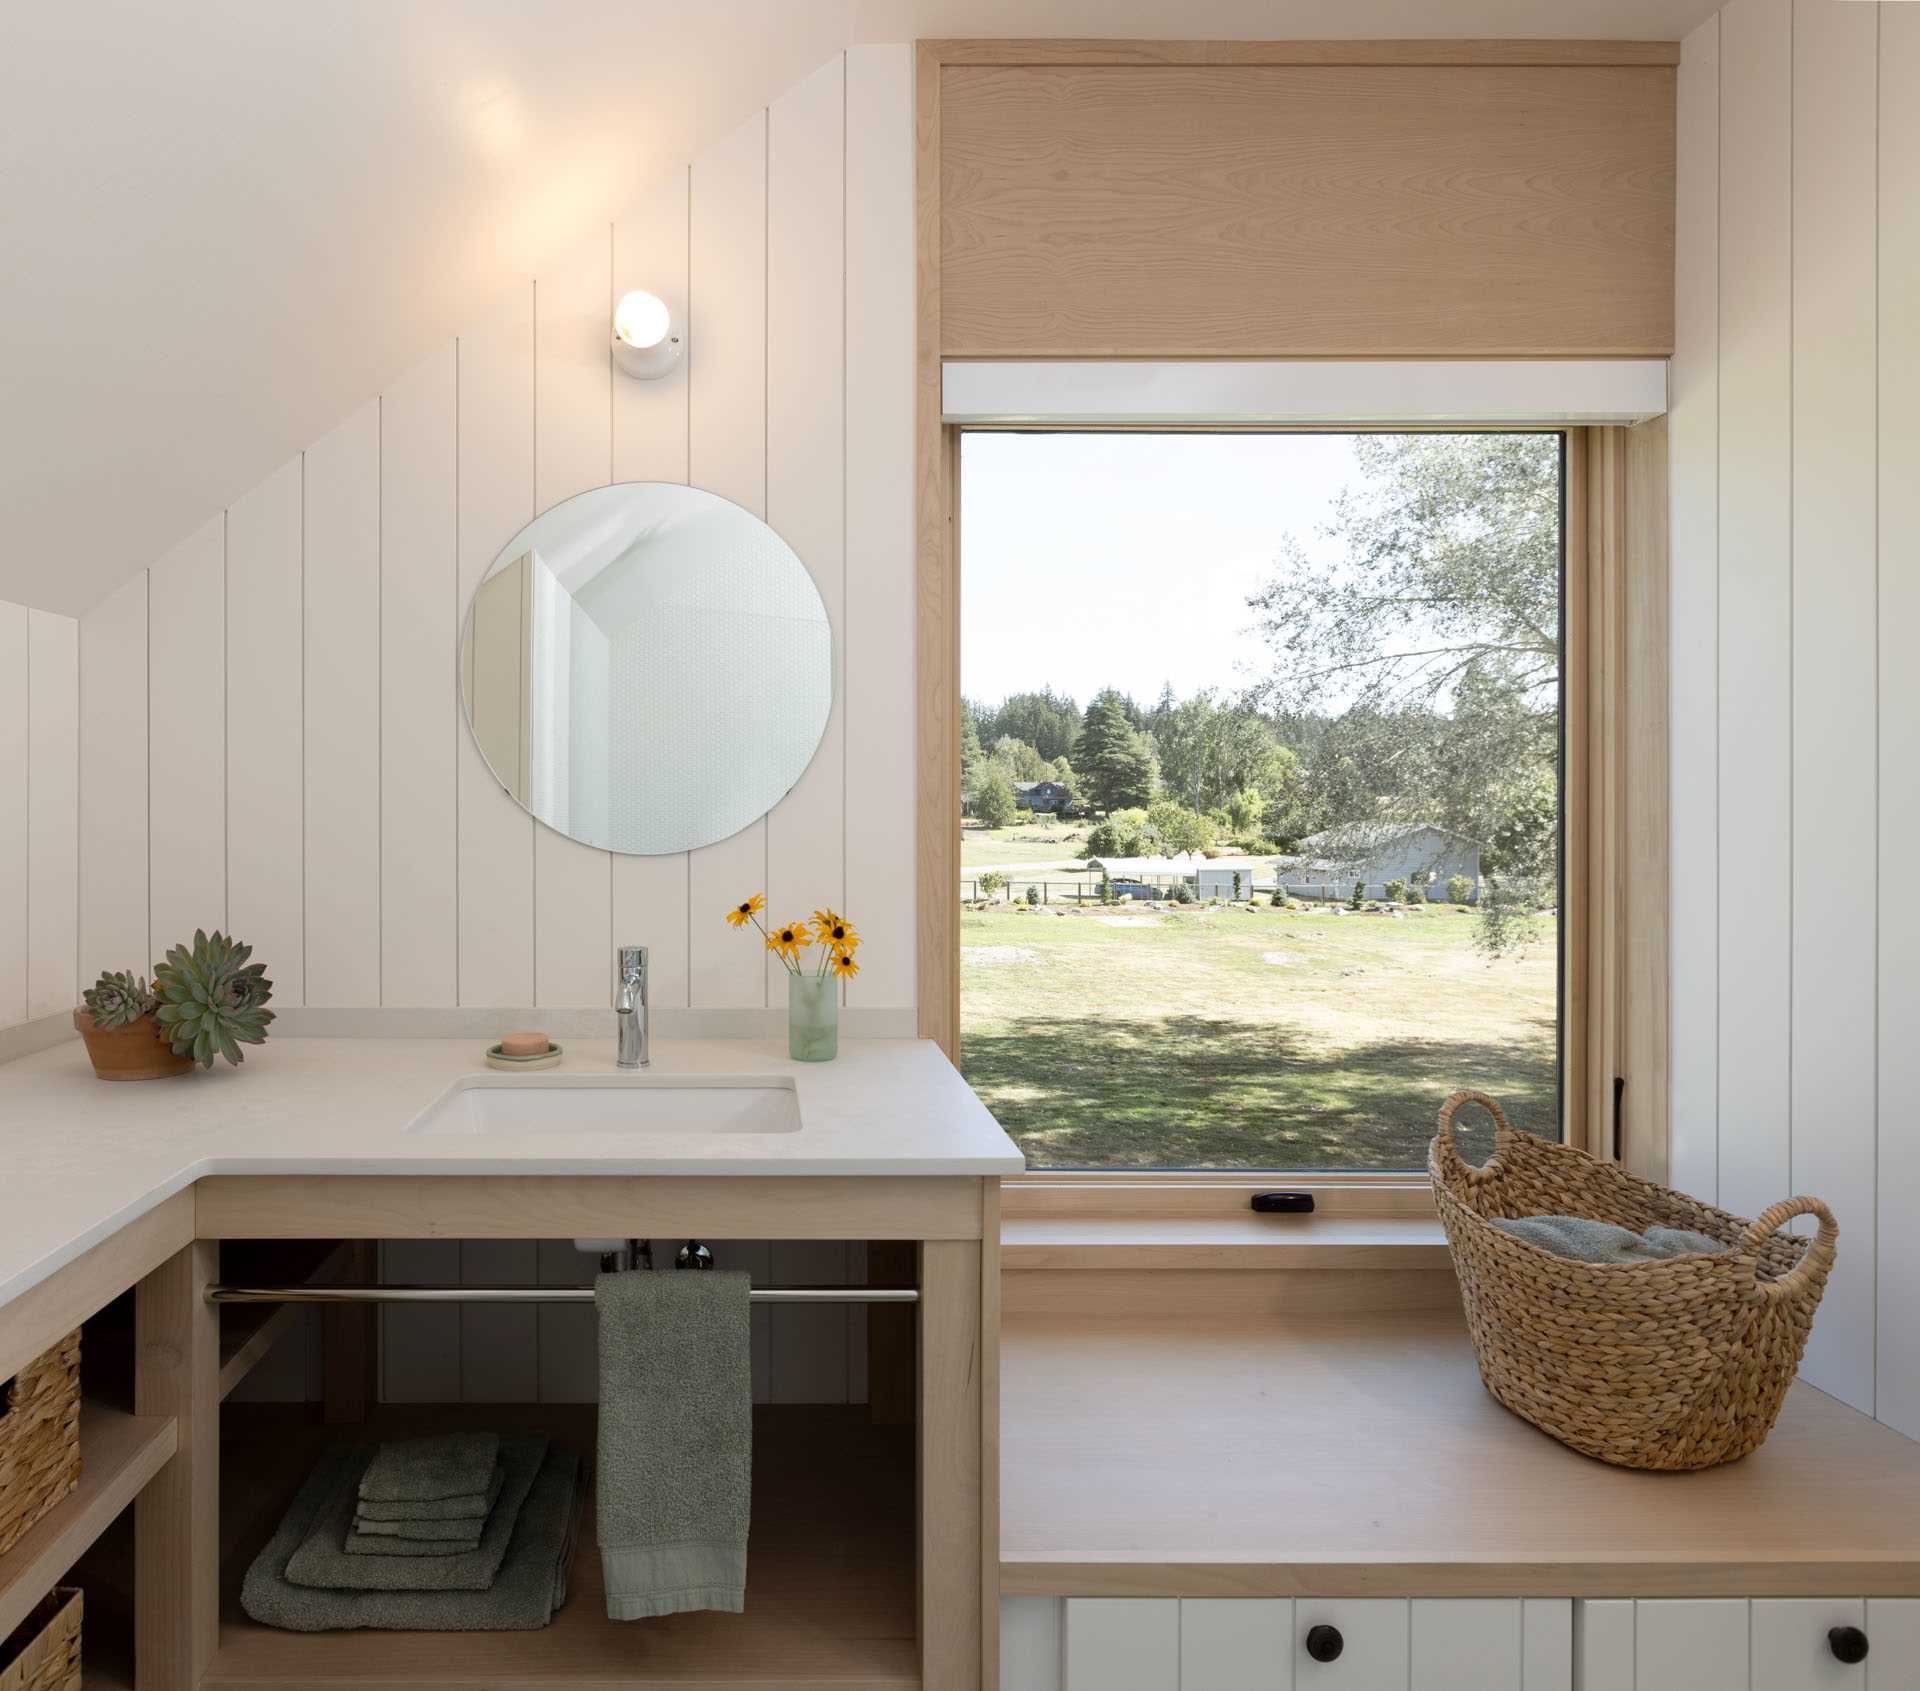 یک حمام مدرن با دیوارهای سفید، یک آینه گرد و یک نیمکت زیر پنجره.